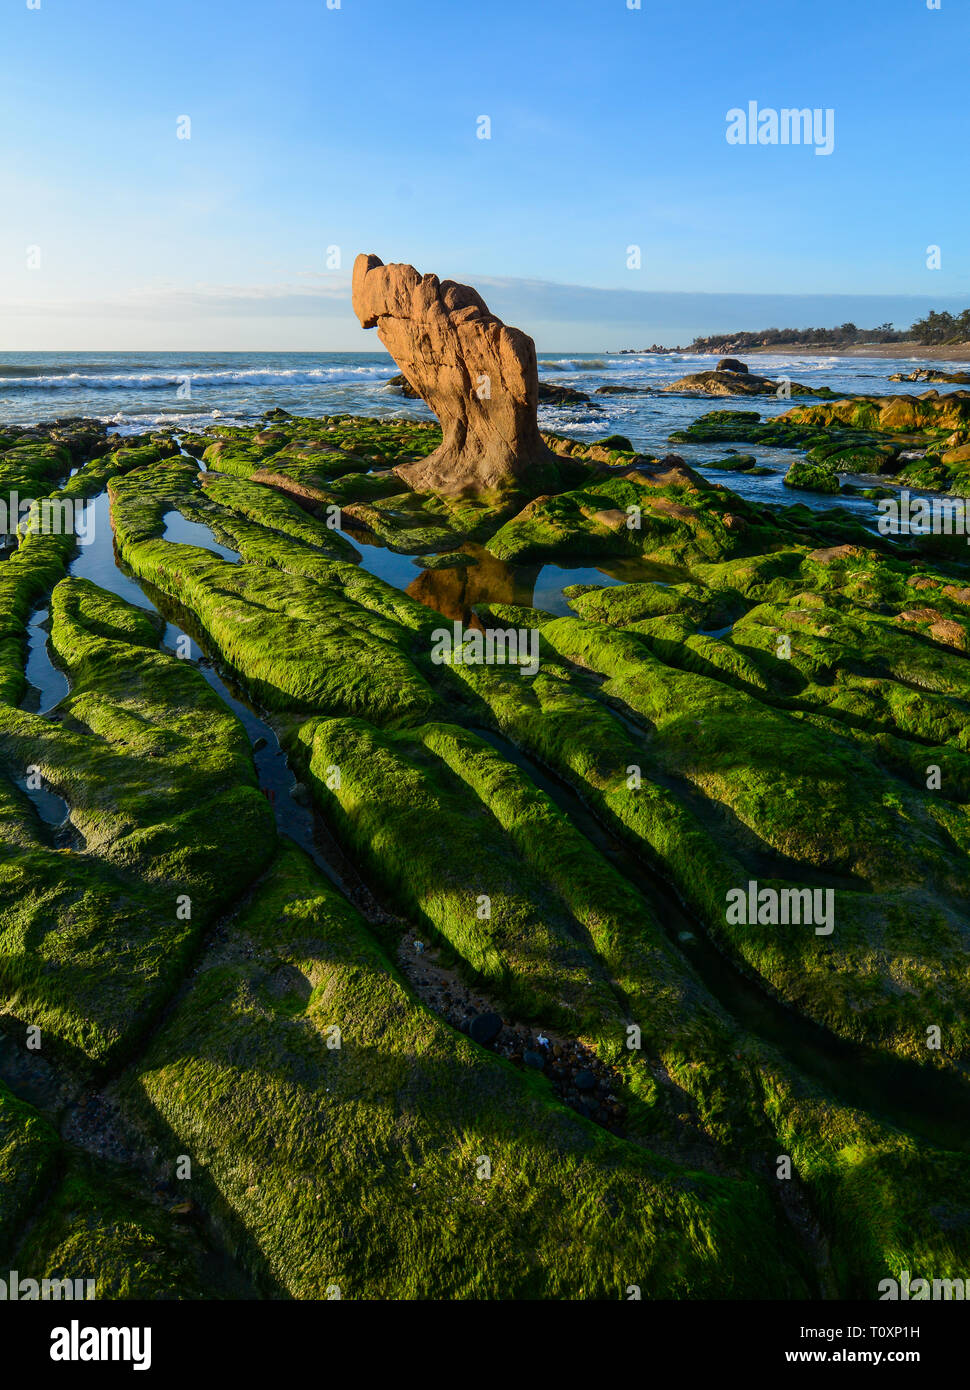 Algues vertes sur un rocher au milieu de la mer. Mer de Chine du Sud au Vietnam. Banque D'Images